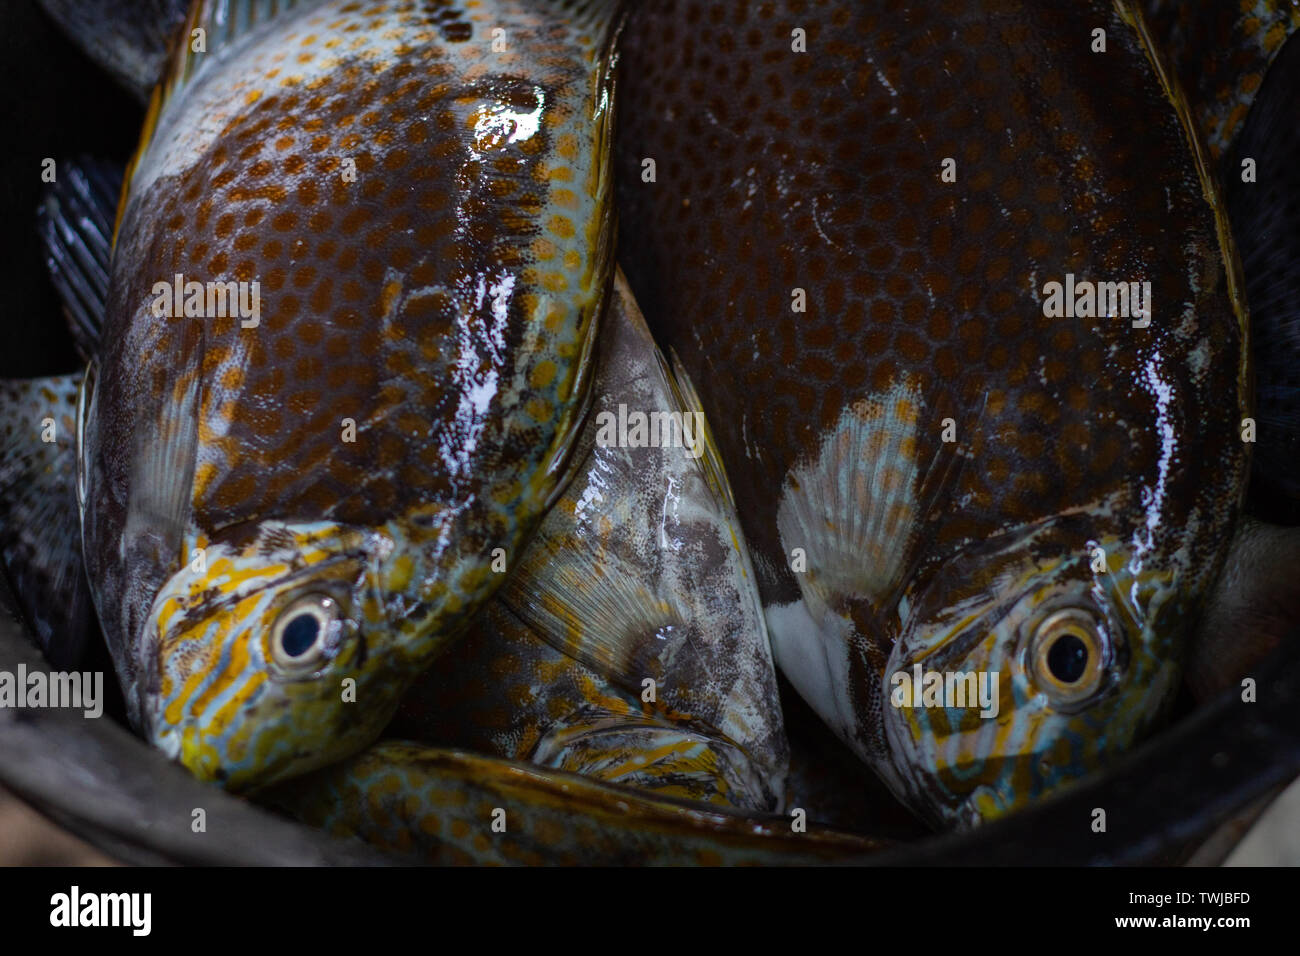 Certaines matières premières fraîches et poissons perroquets capturés par les pêcheurs sont placés dans un seau en plastique Banque D'Images